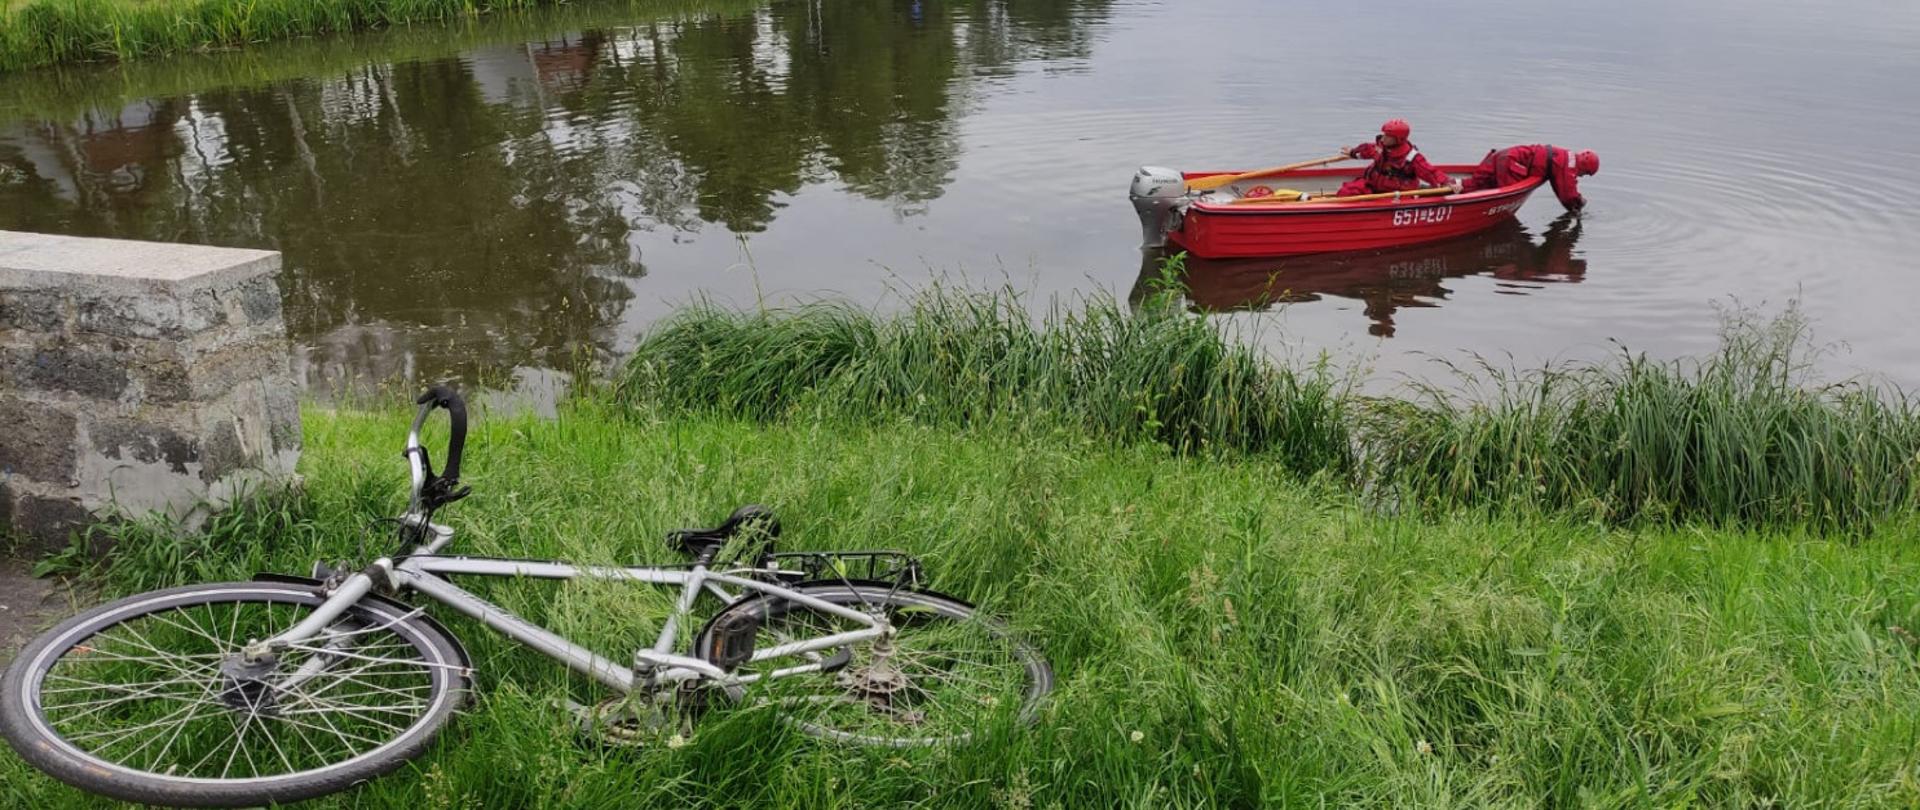 Zdjęcie przedstawia czerwoną łódkę ze strażakami płynąca po jeziorze, na brzegu porzucony rower